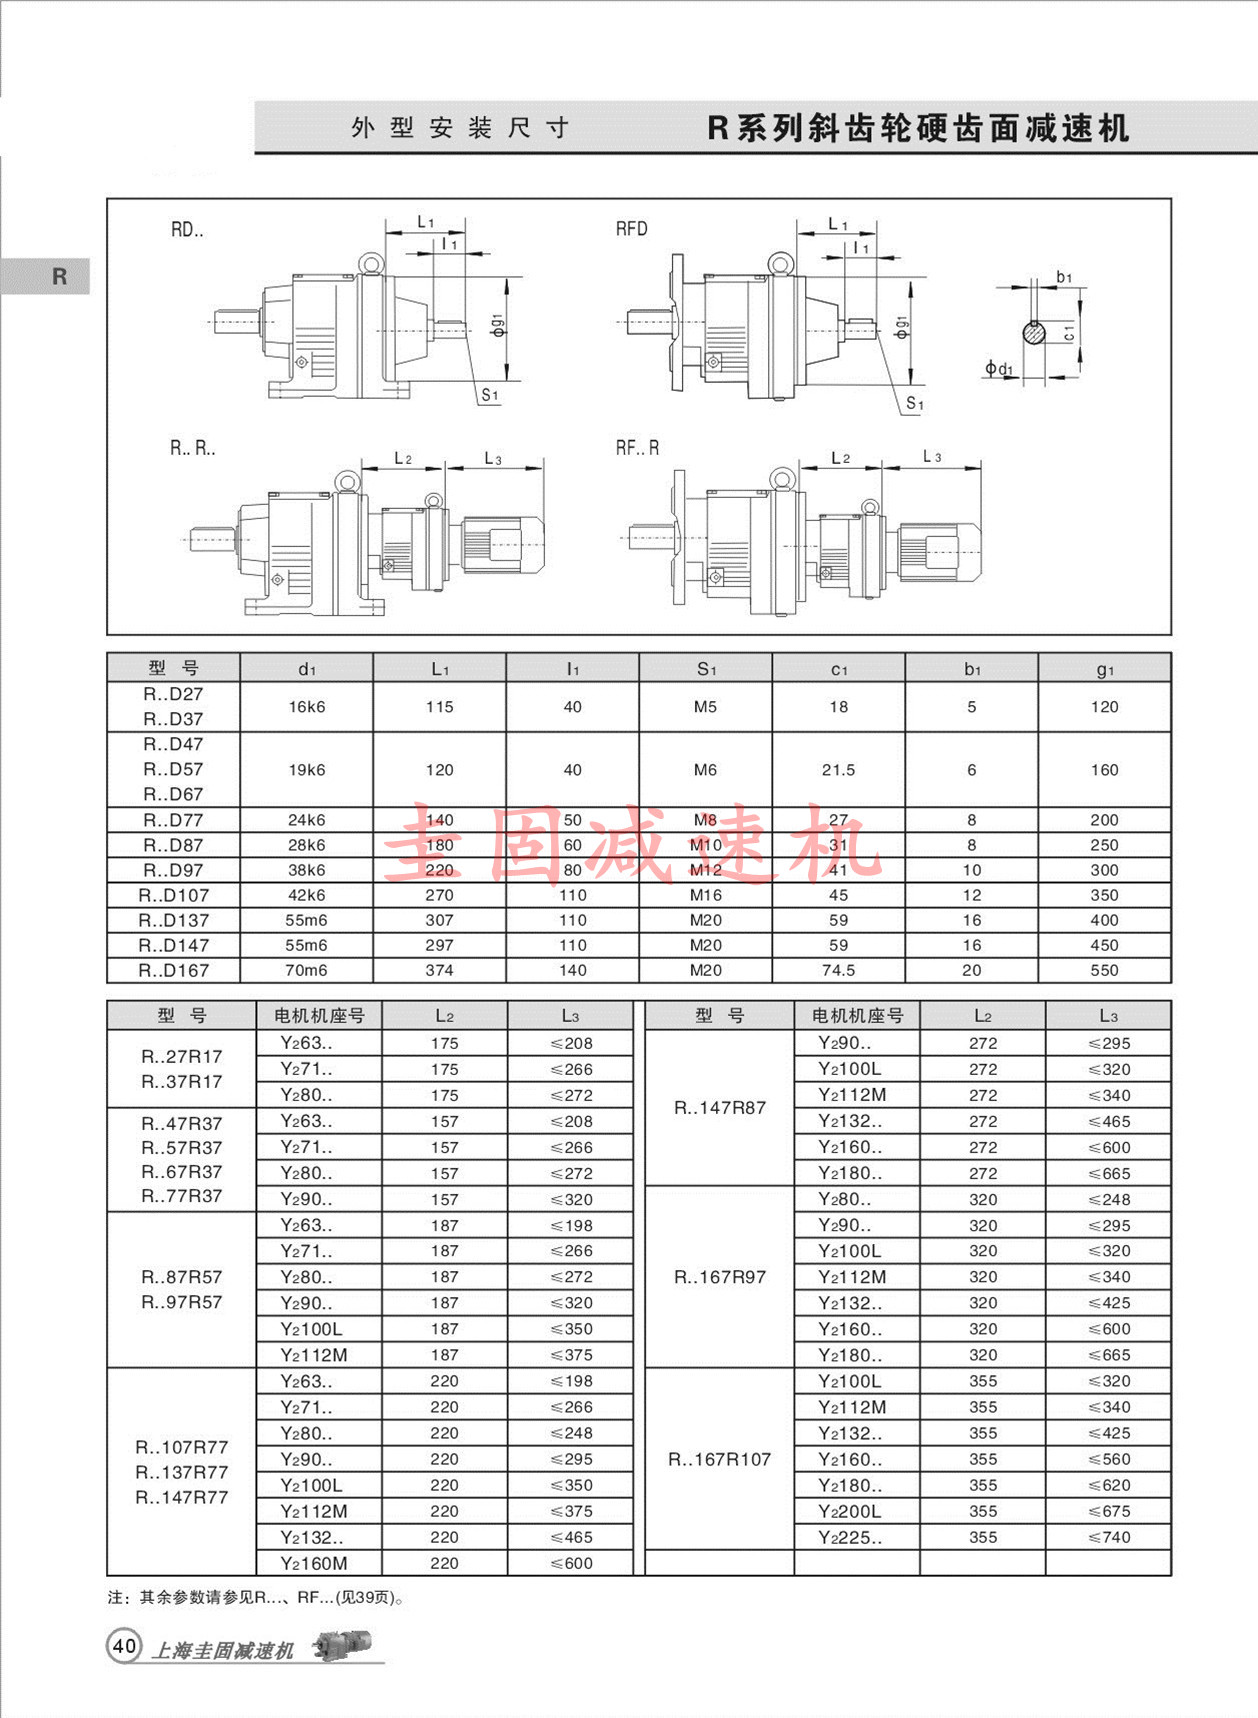 上海圭固R147减速机、R147齿轮减速机、R147减速机3D模型、R147减速机厂家直供 R147减速机,R147齿轮减速机,减速机R147,R147减速器,R147减速电机